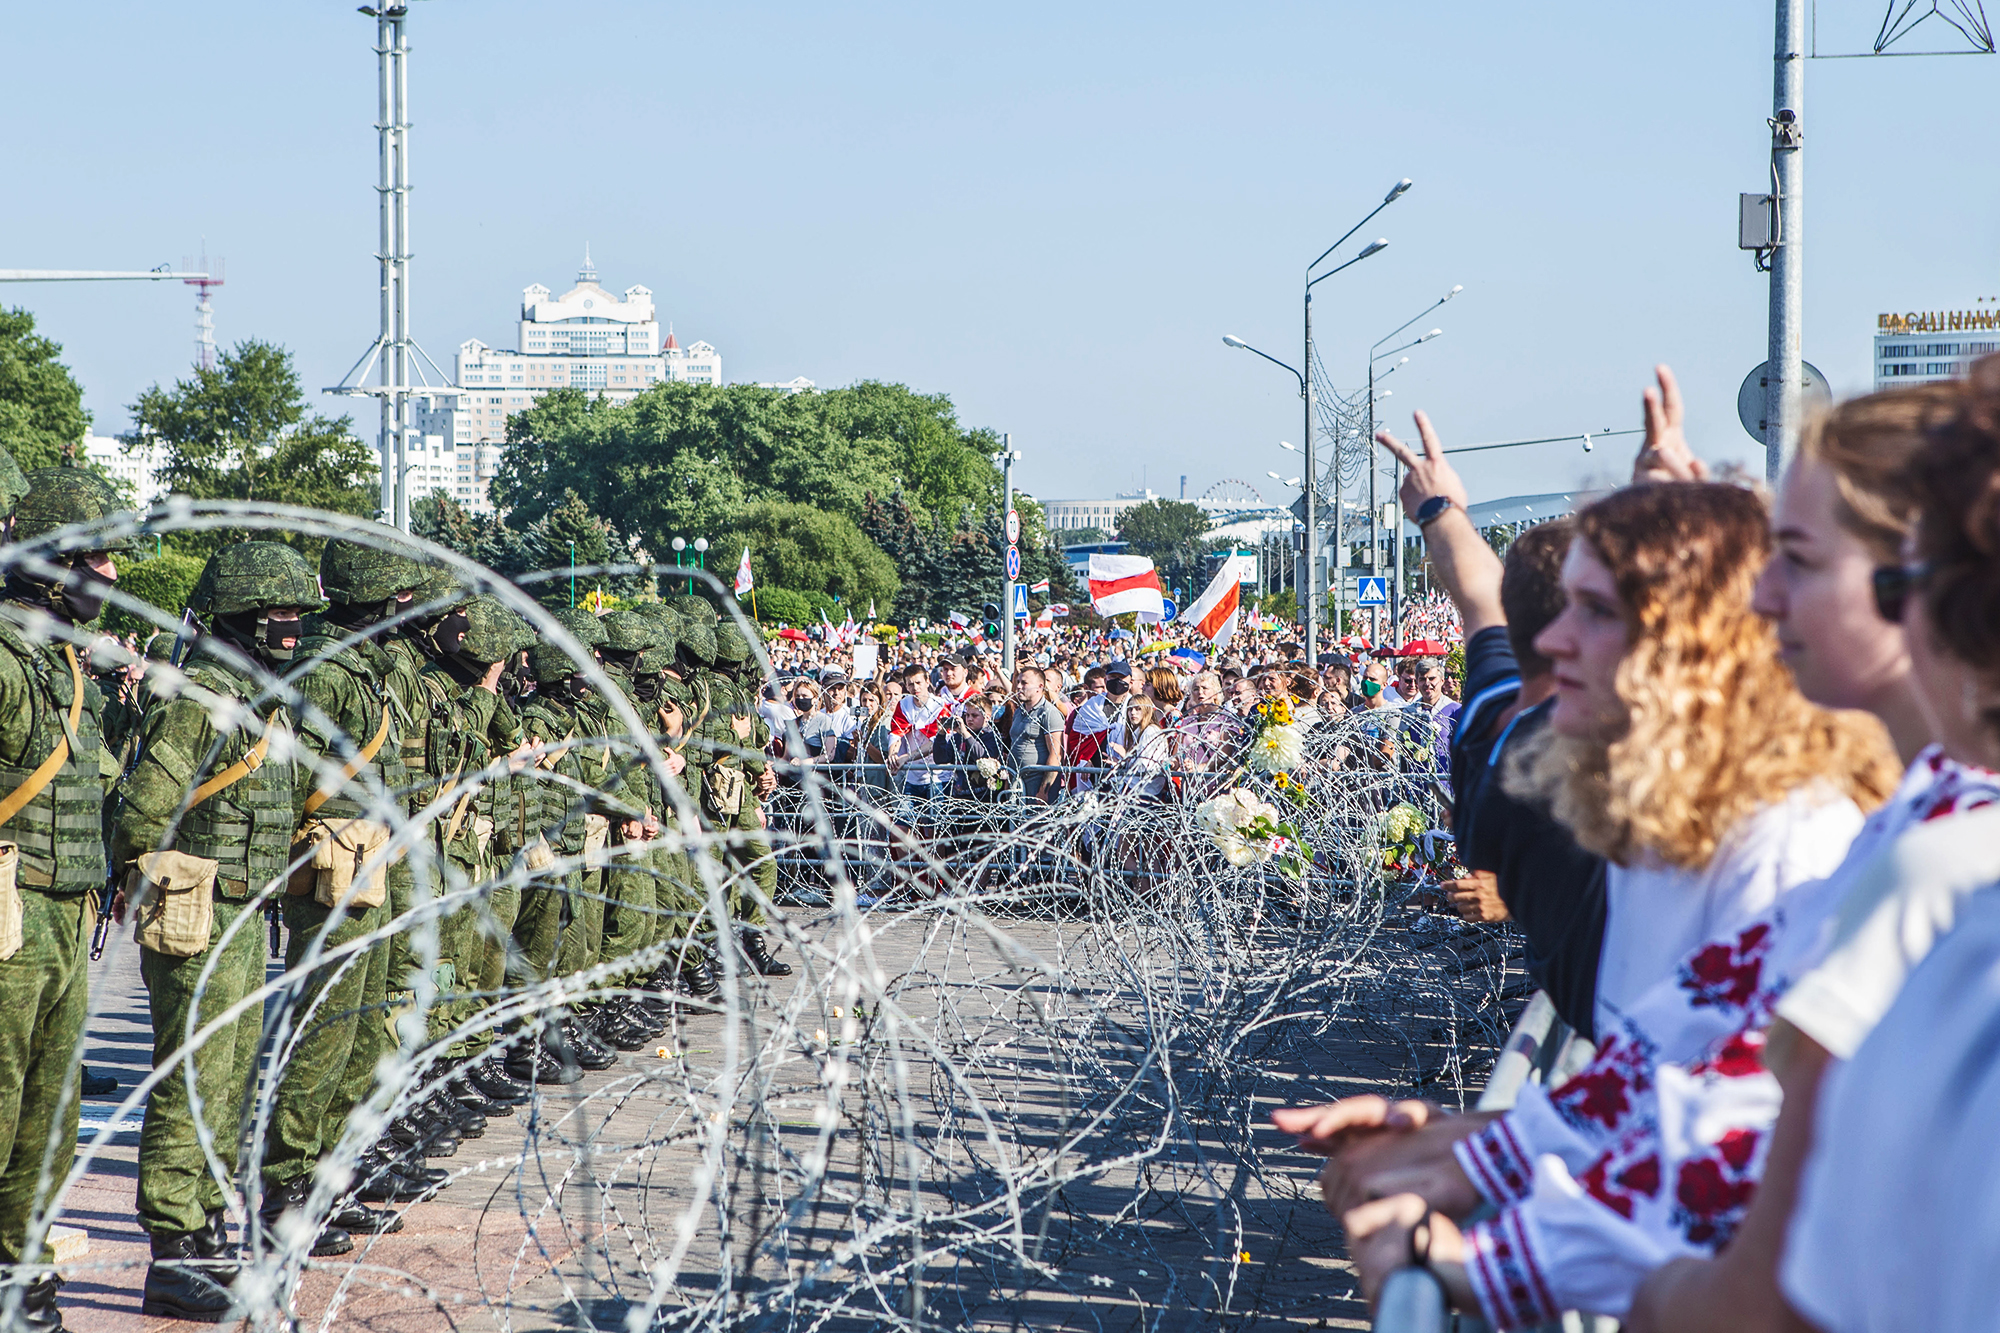 Tras la manifestación, delante del monumento "Stela". Minsk, agosto de 2020.